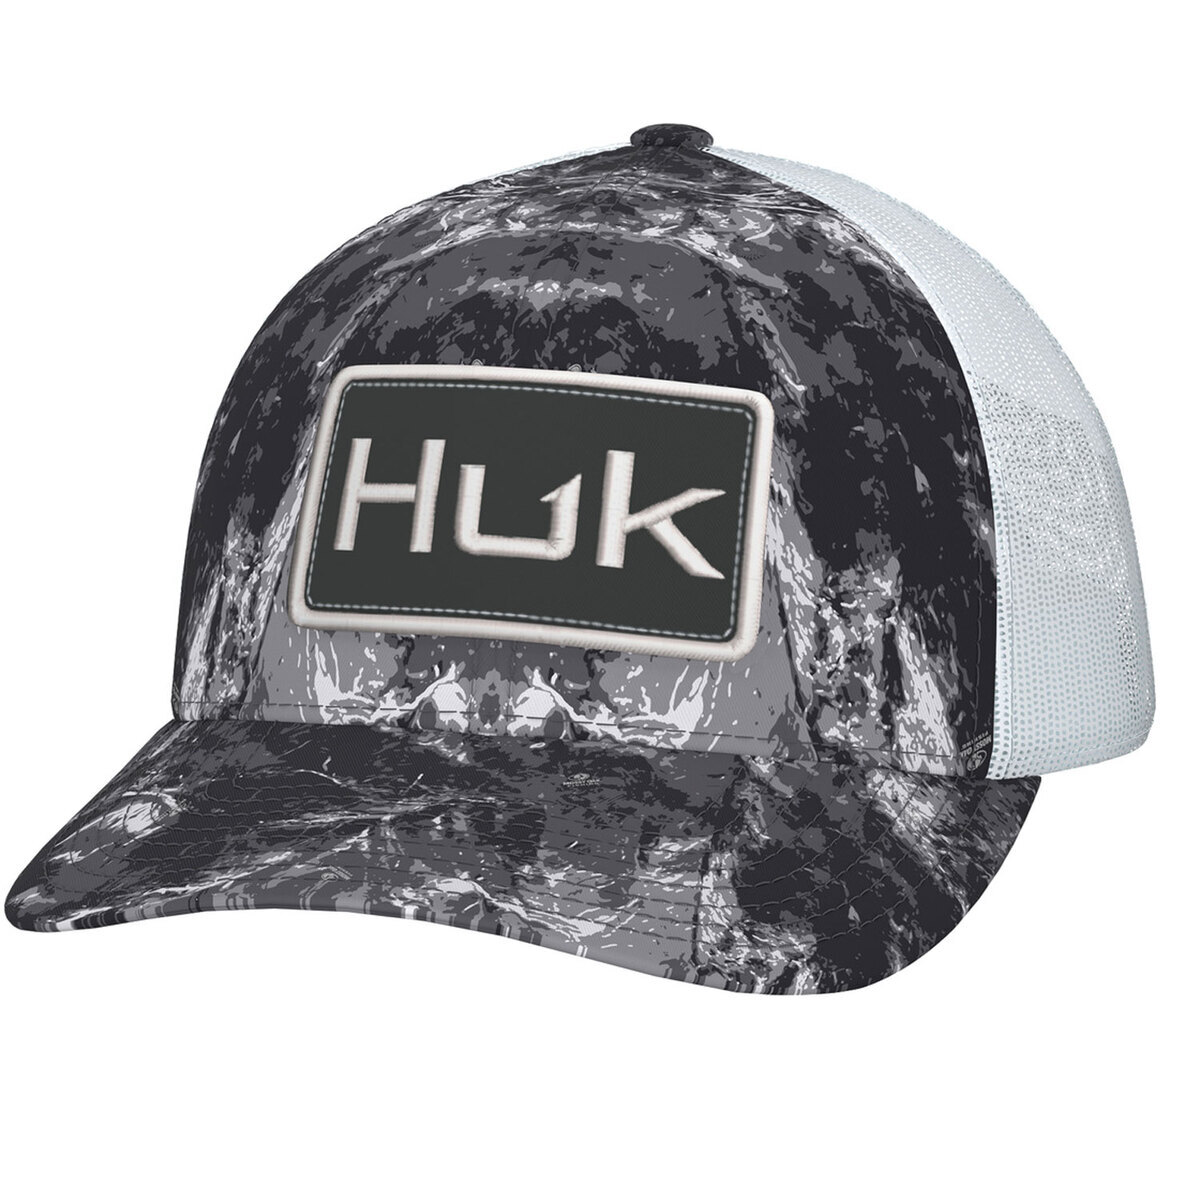 Huk Men's Mossy Oak Stormwater Trucker Hat, Moe SW Midnight